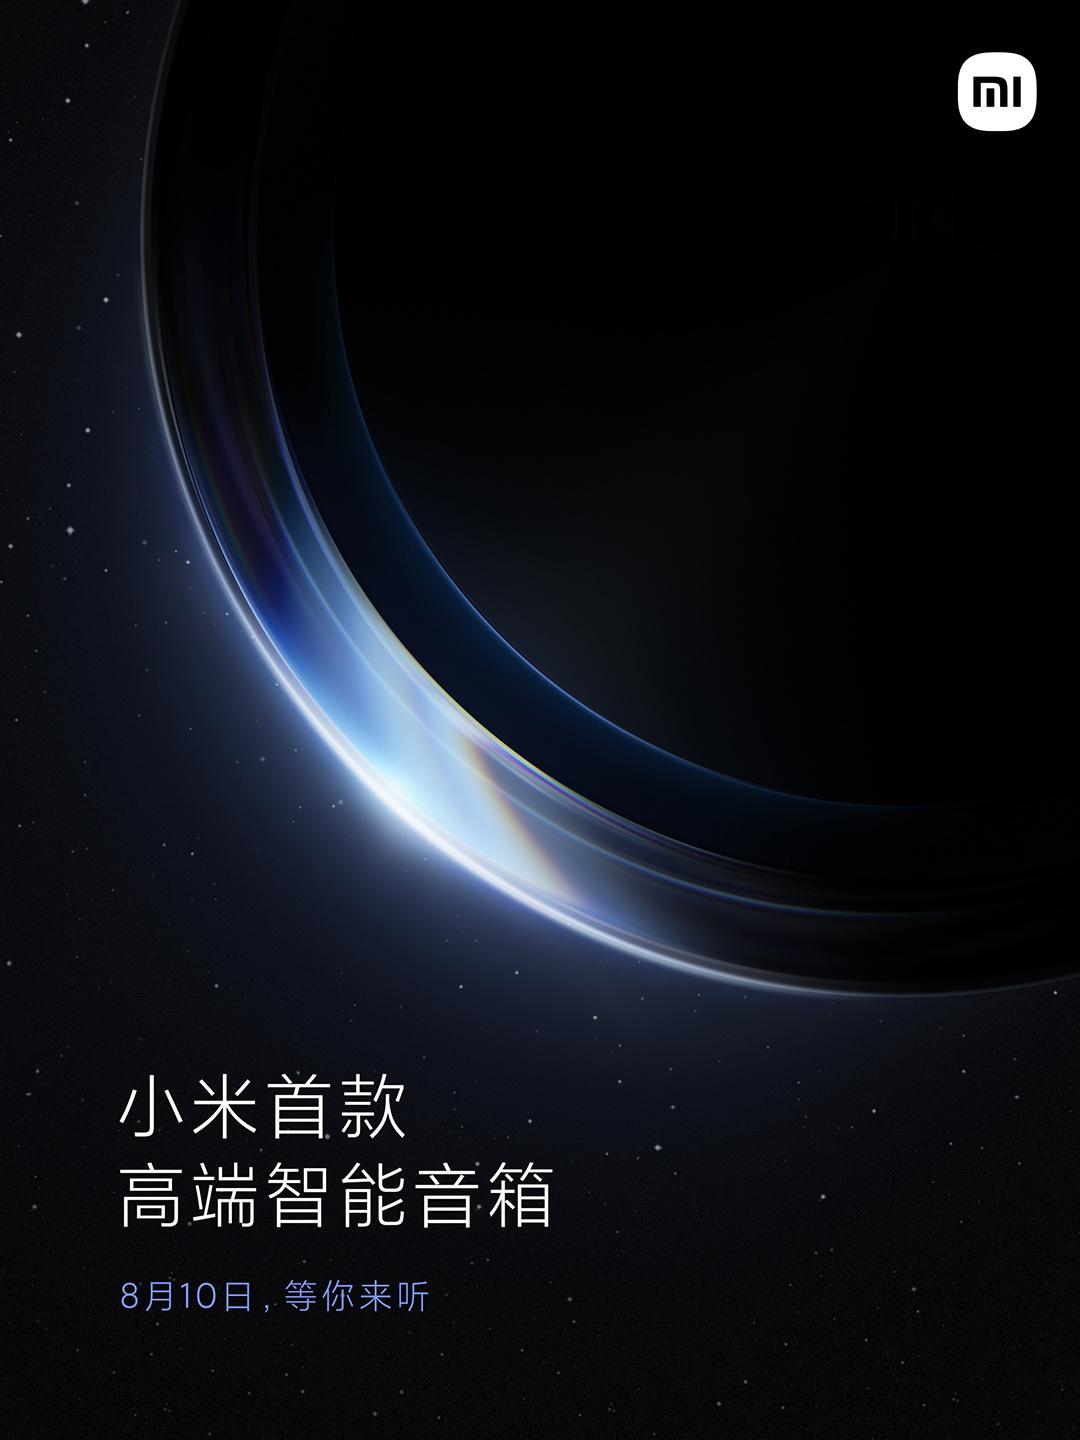 „Jeszcze jedna rzecz” Xiaomi: 10 sierpnia producent chce nas tym zaskoczyć